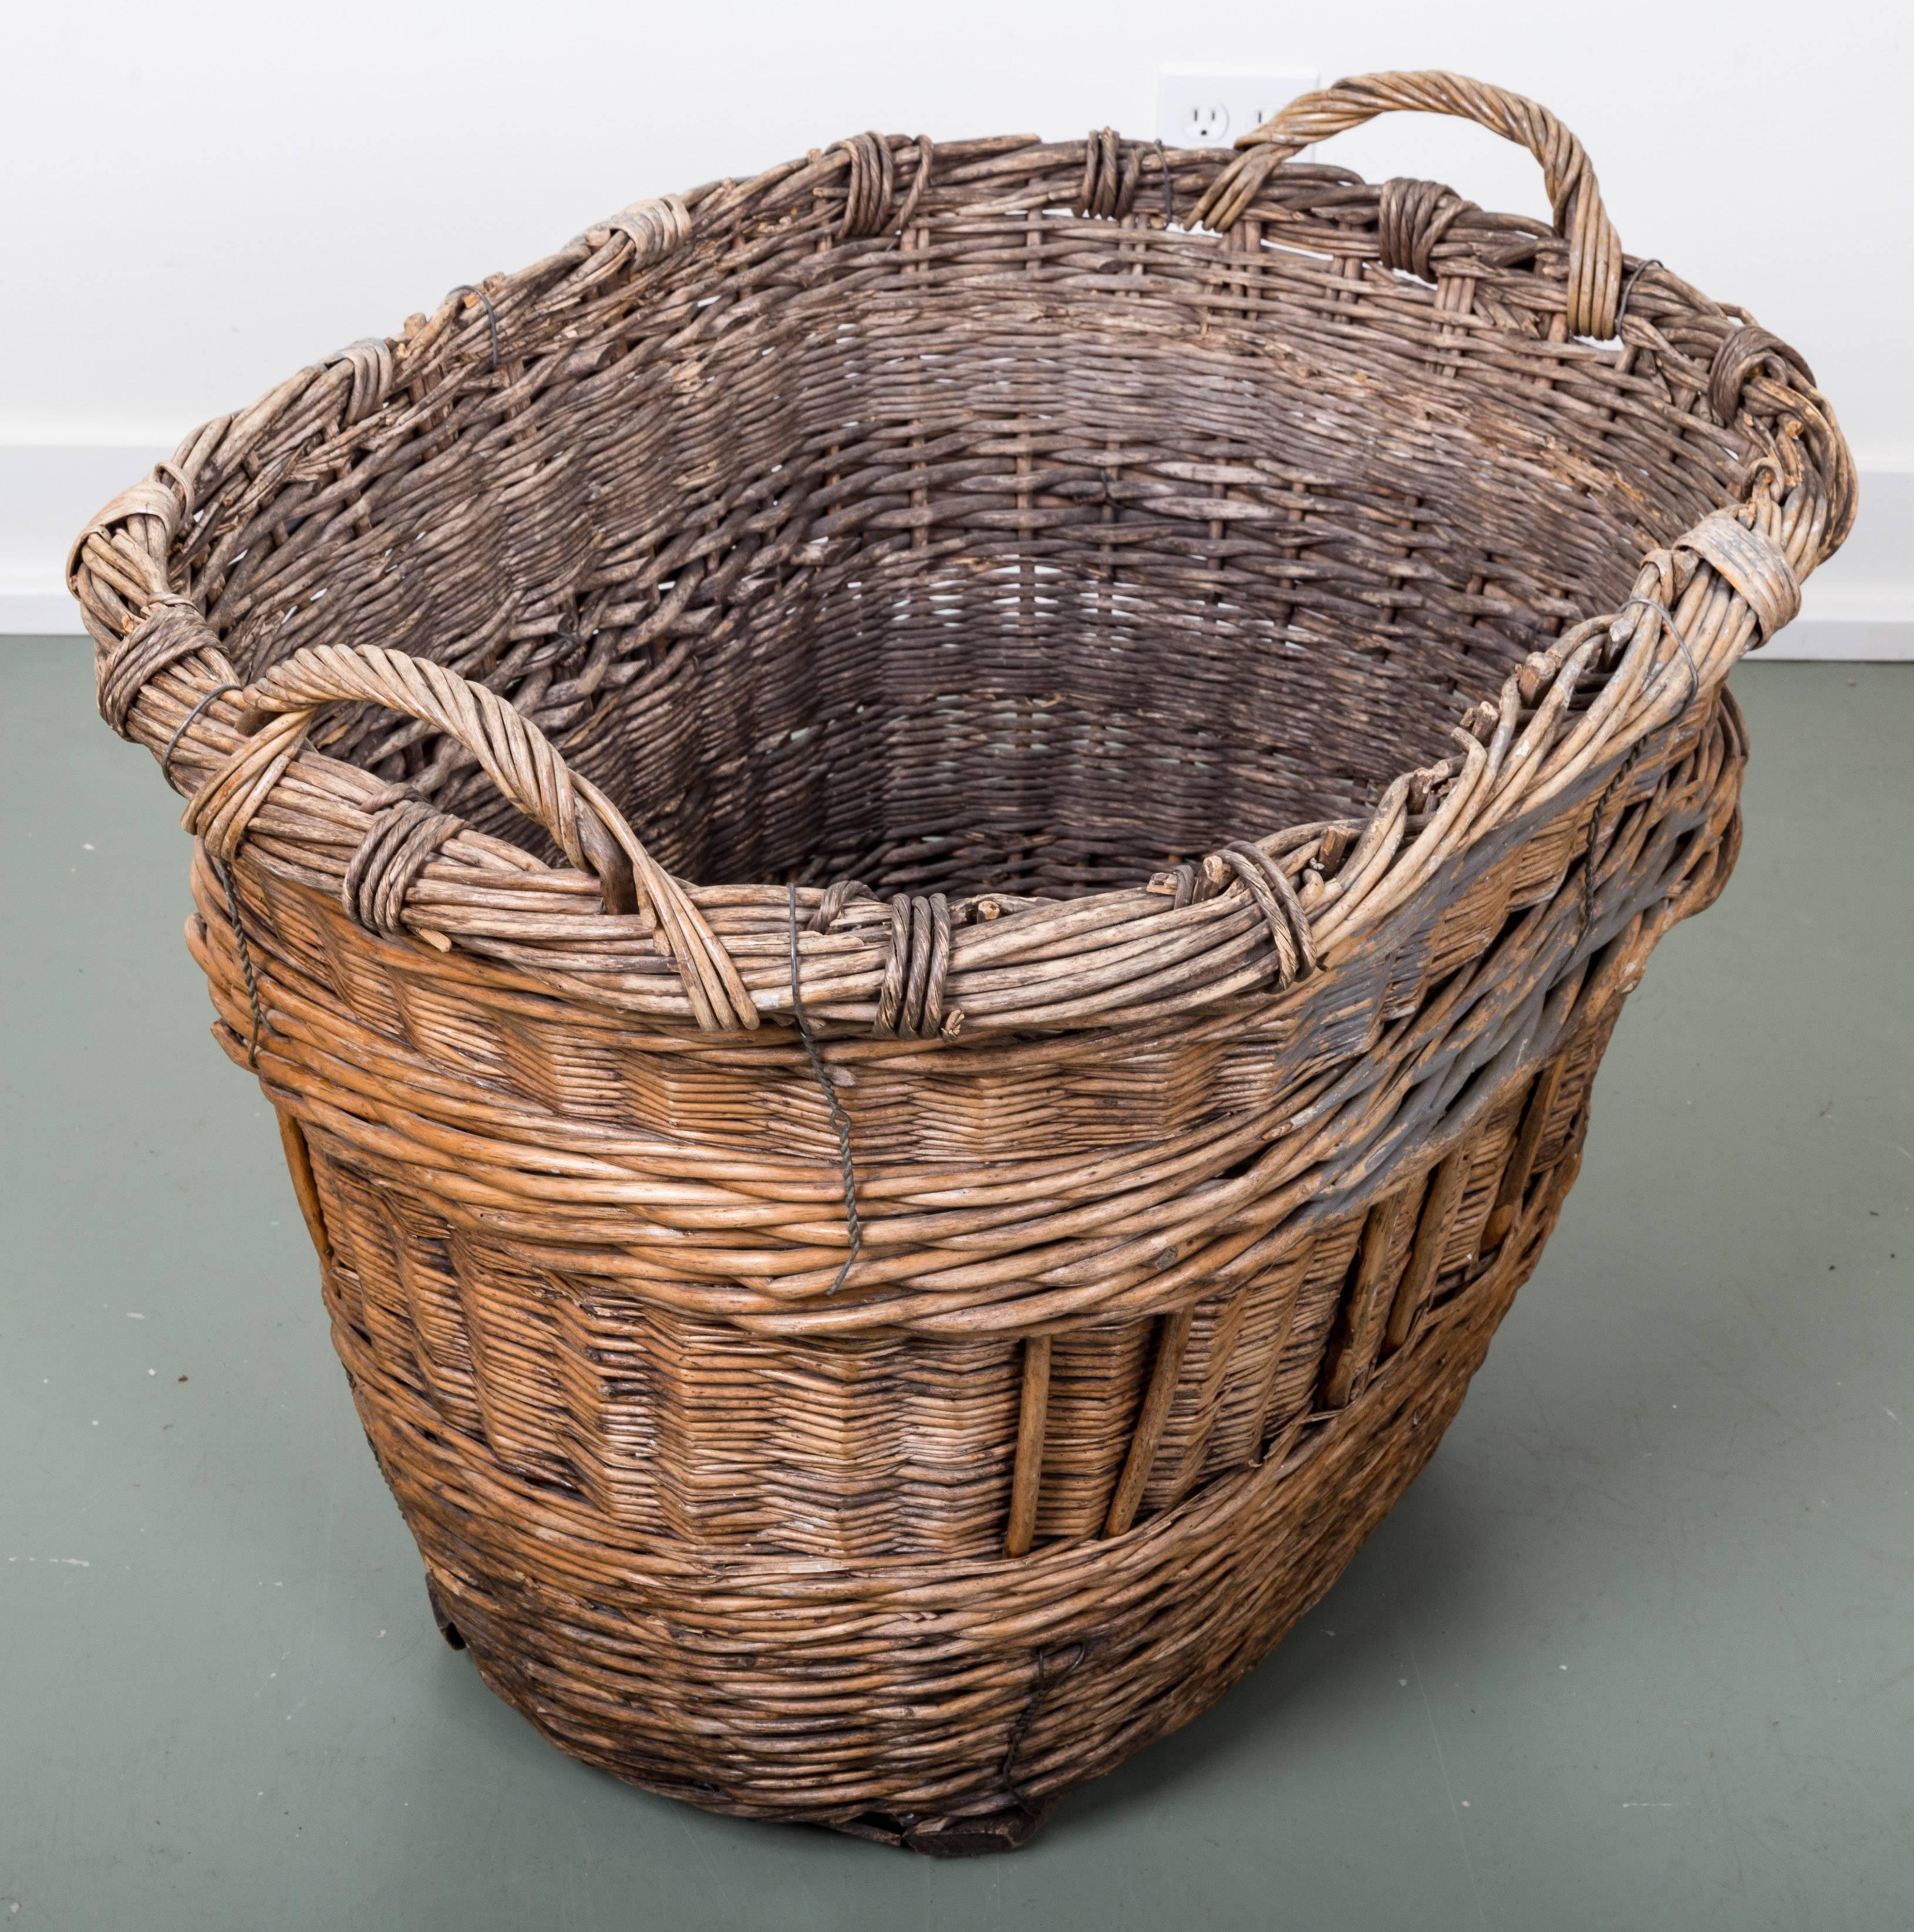 harvest baskets for sale